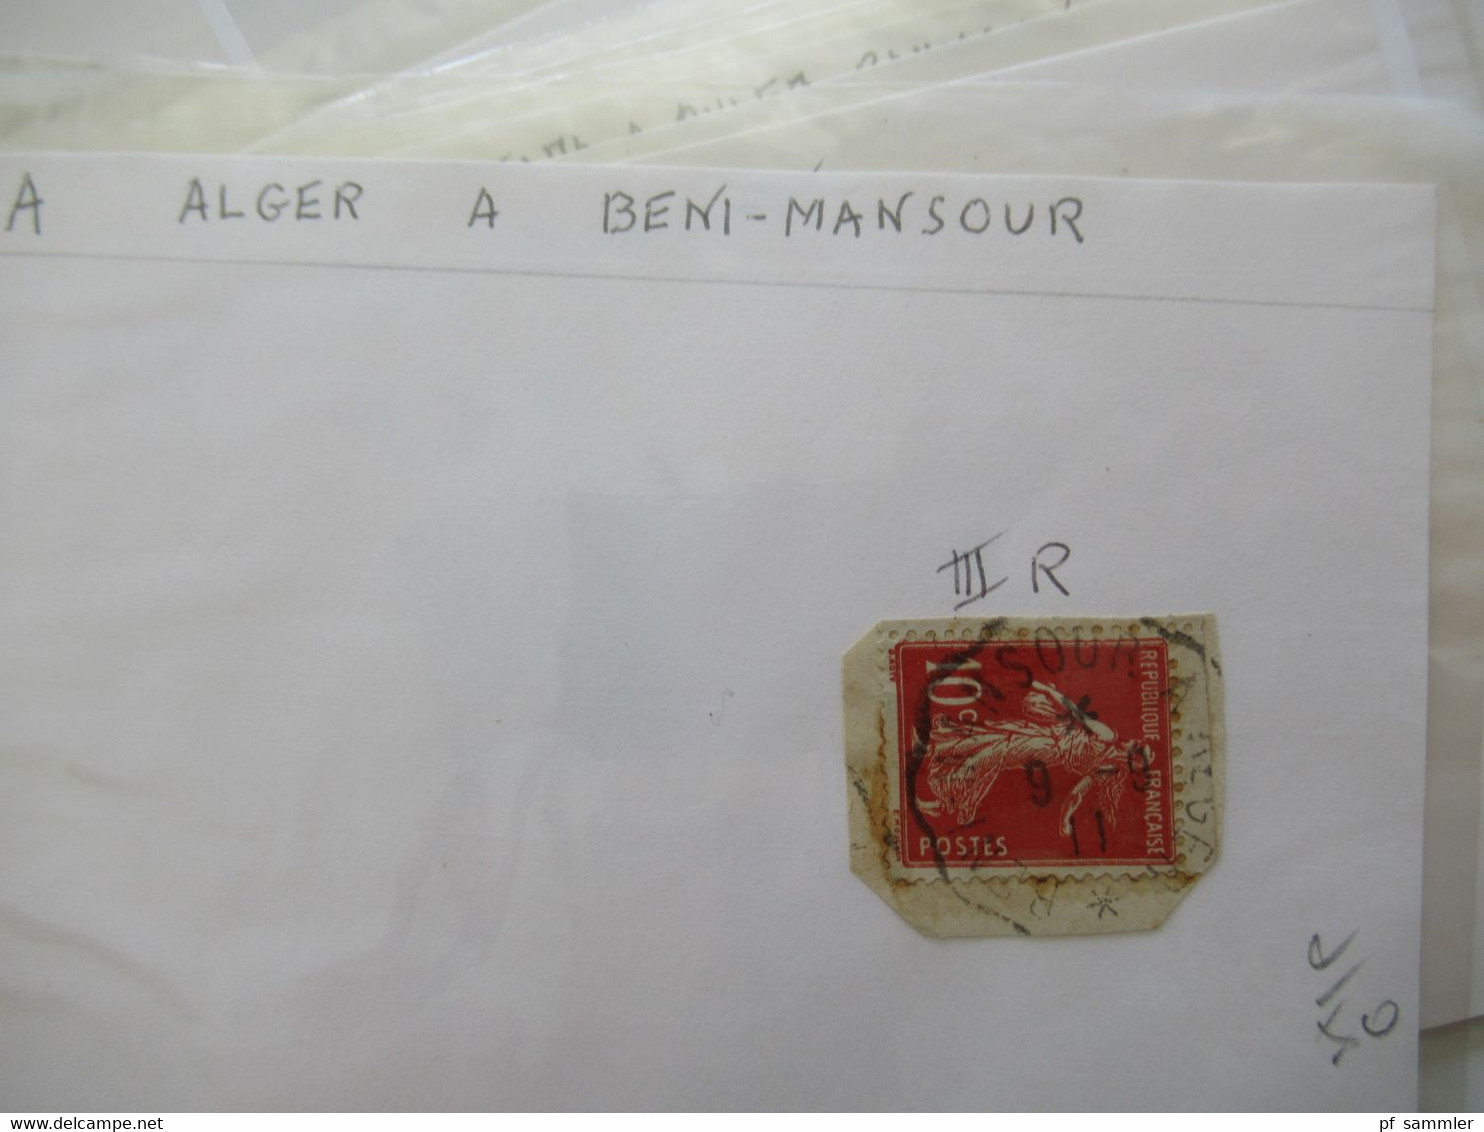 Frankreich Gebiete Algerien / Alger u. Constantine Marken kleiner Posten auch ein Briefstück Stp 1953 Innsbruck A Lindau